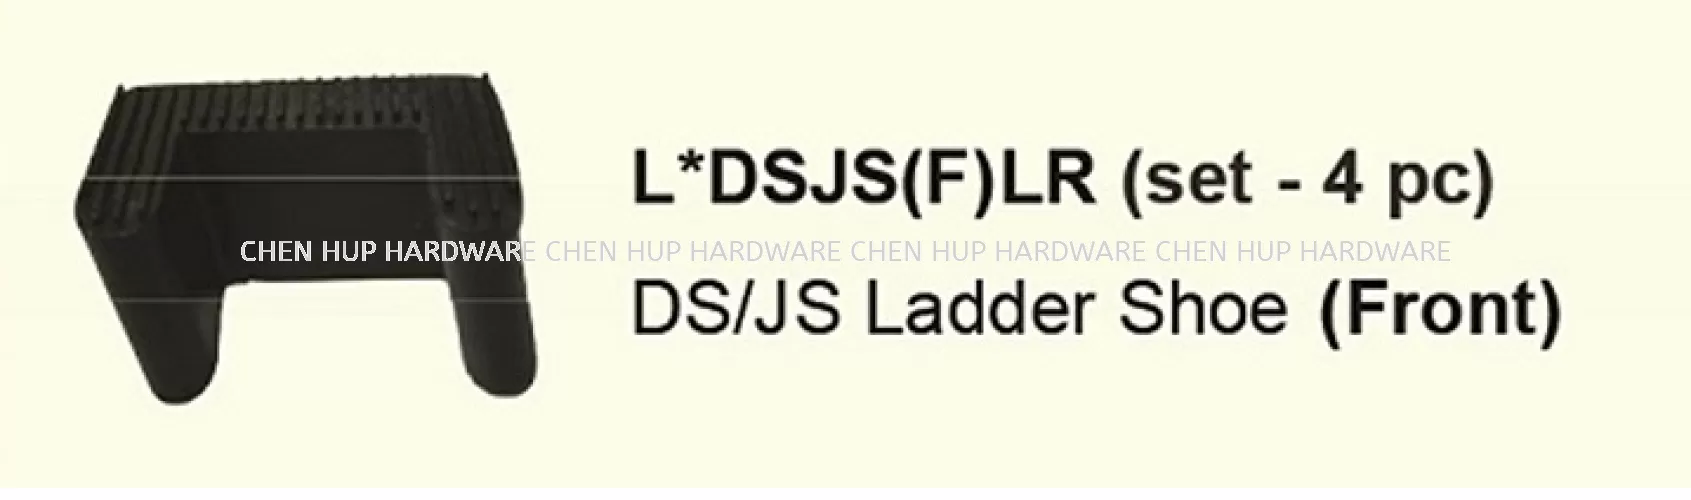 L DSJS(F)LR (Set - 4pc) - DS & JS Ladder Shoe (Front)